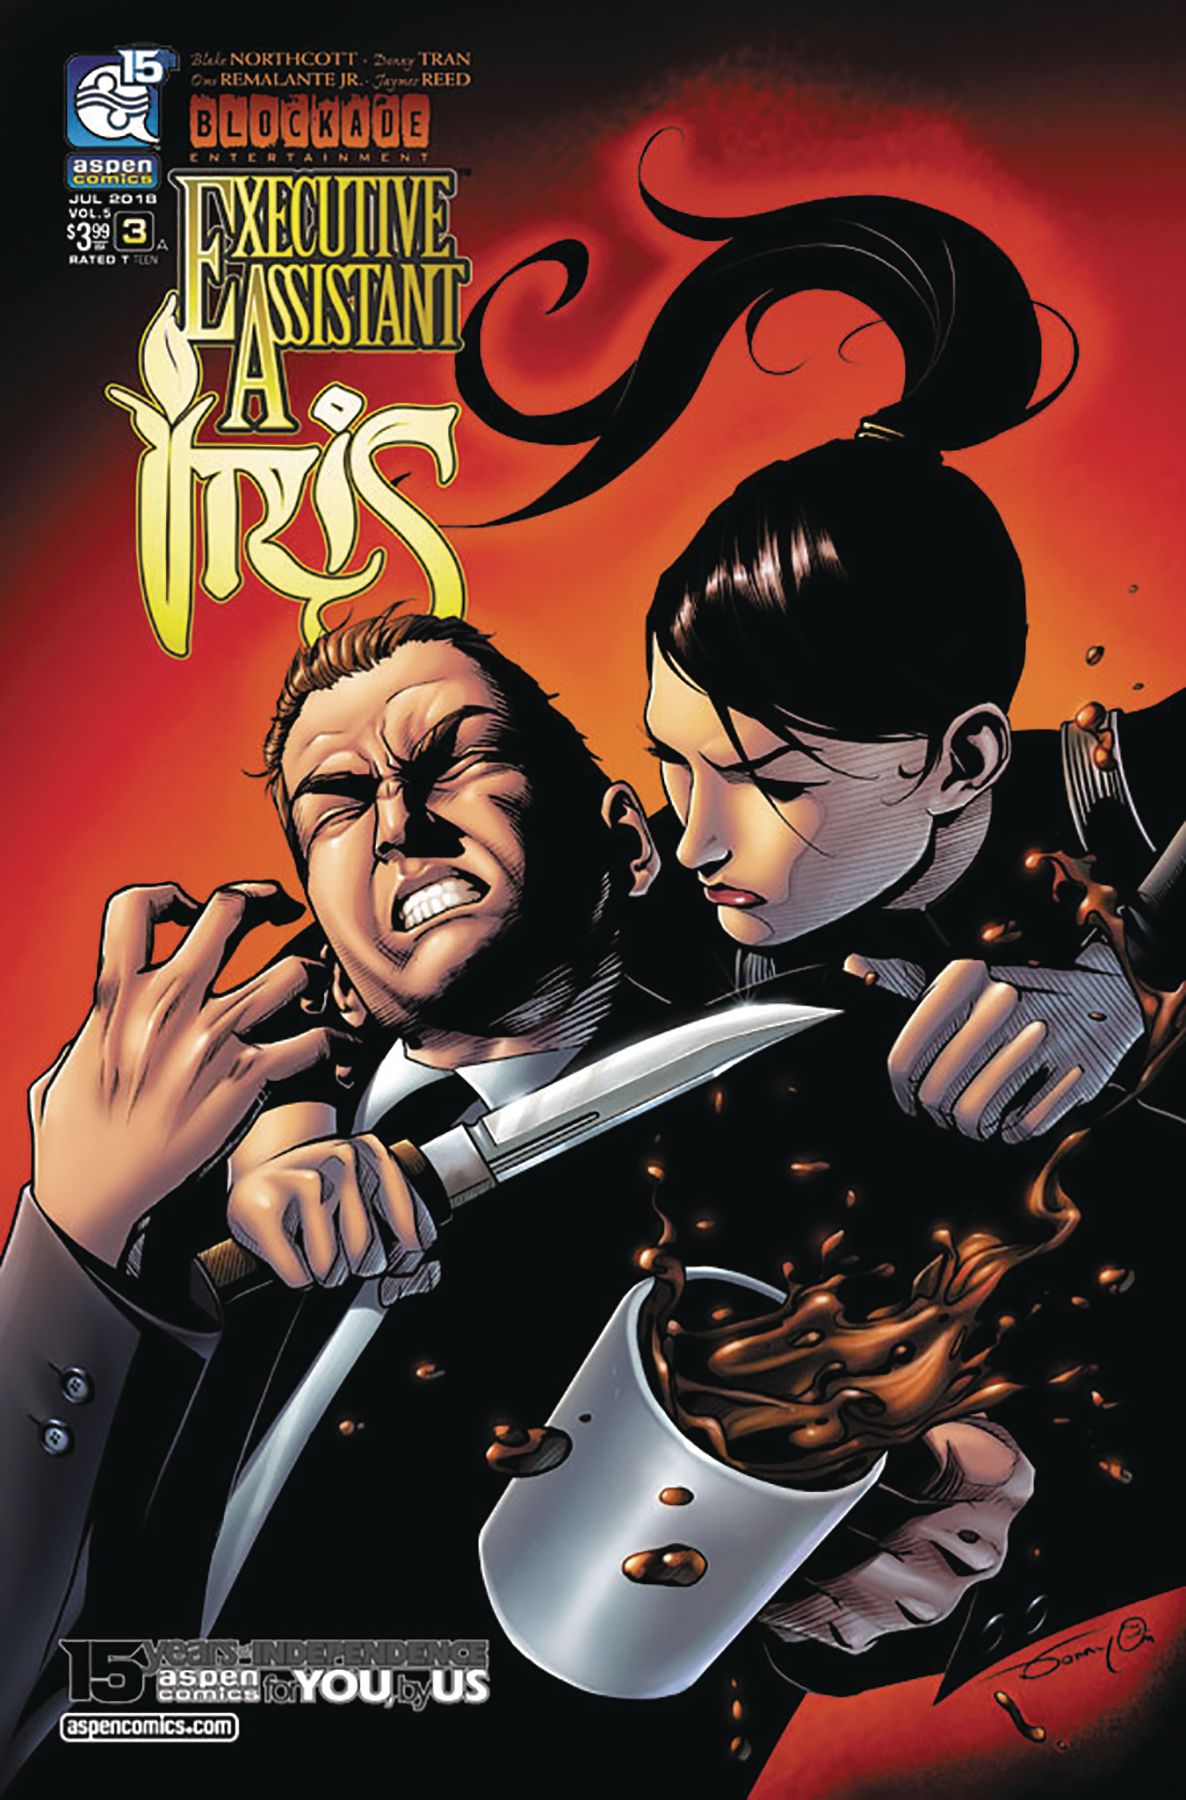 Executive Assistant Iris #3 Comic